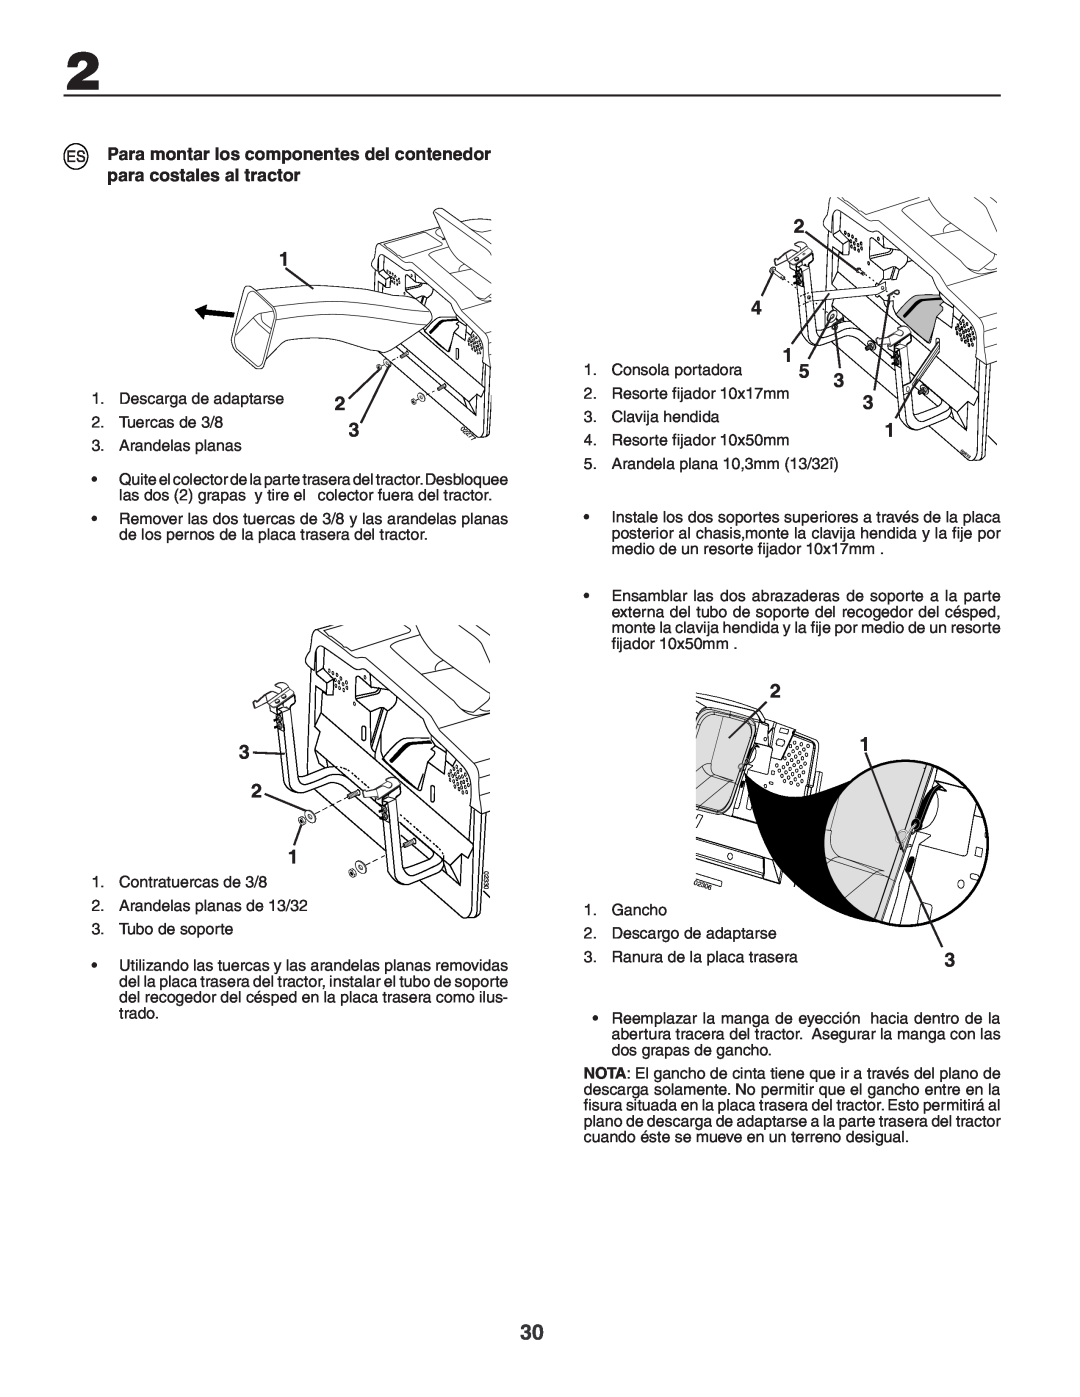 Husqvarna CTH150 XP, CTH210xp instruction manual Para montar los componentes del contenedor para costales al tractor 